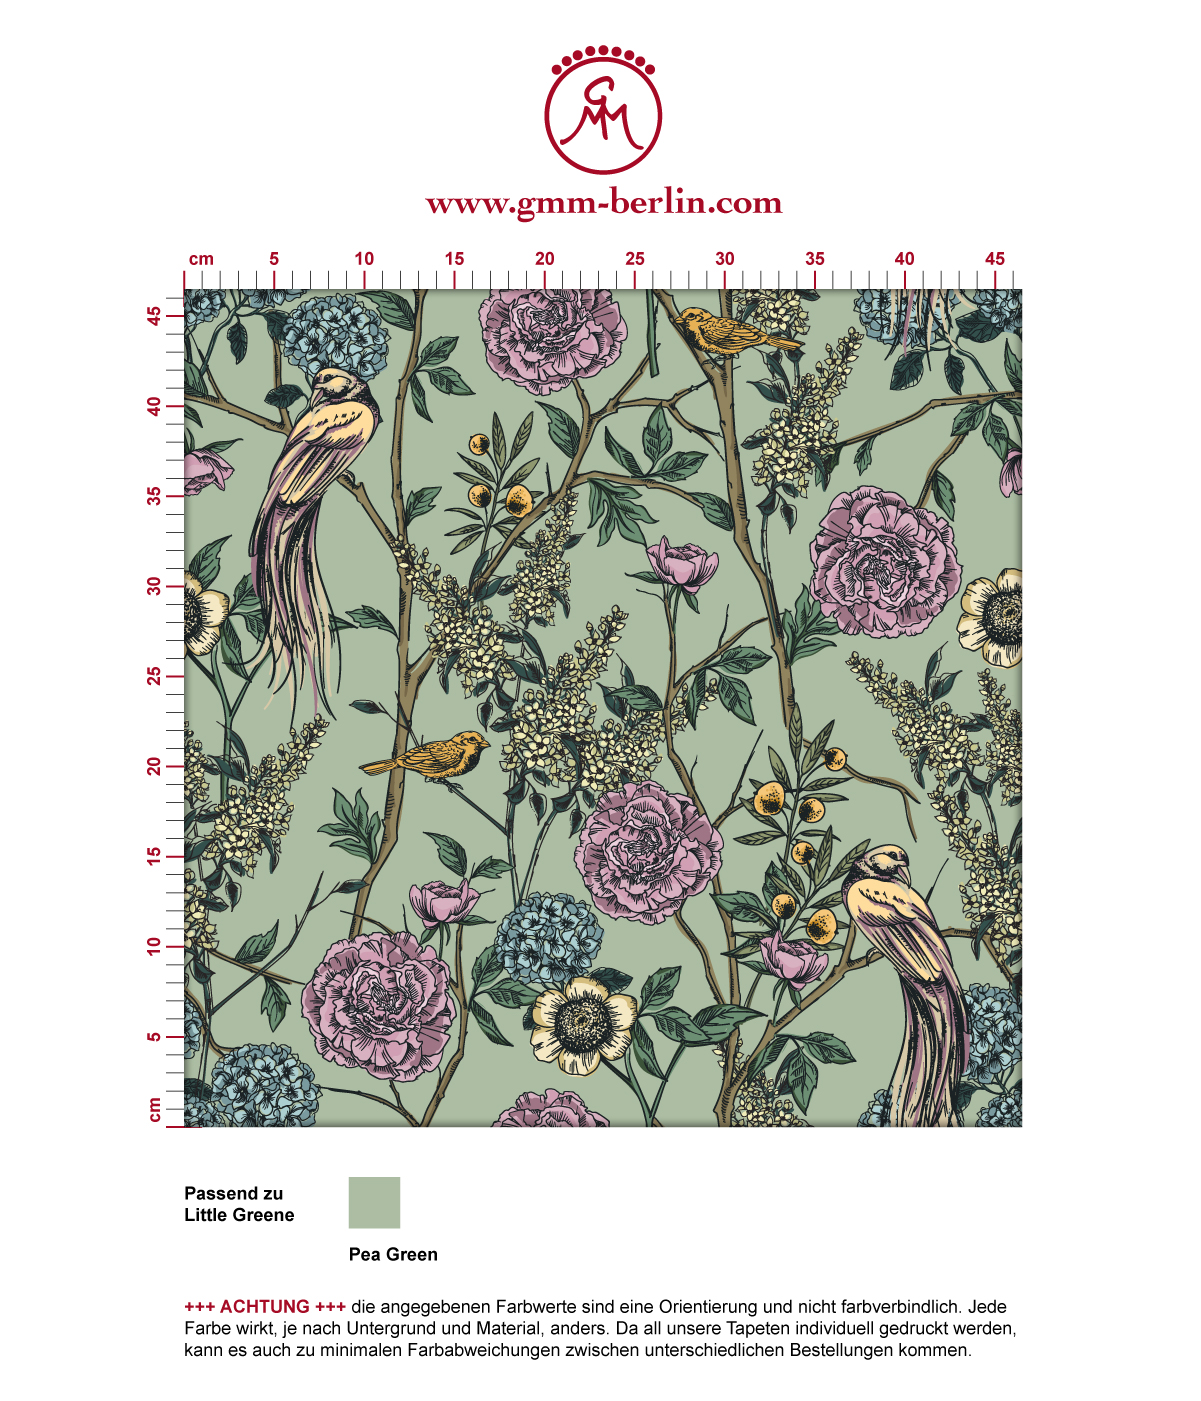 florale Tapete "Victorias Treasure" mit Paradies Vögeln und Blumen in grün - großer Rapport angepasst an Little Greene Wandfarben. Aus dem GMM-BERLIN.com Sortiment: Schöne Tapeten in der Farbe: flieder